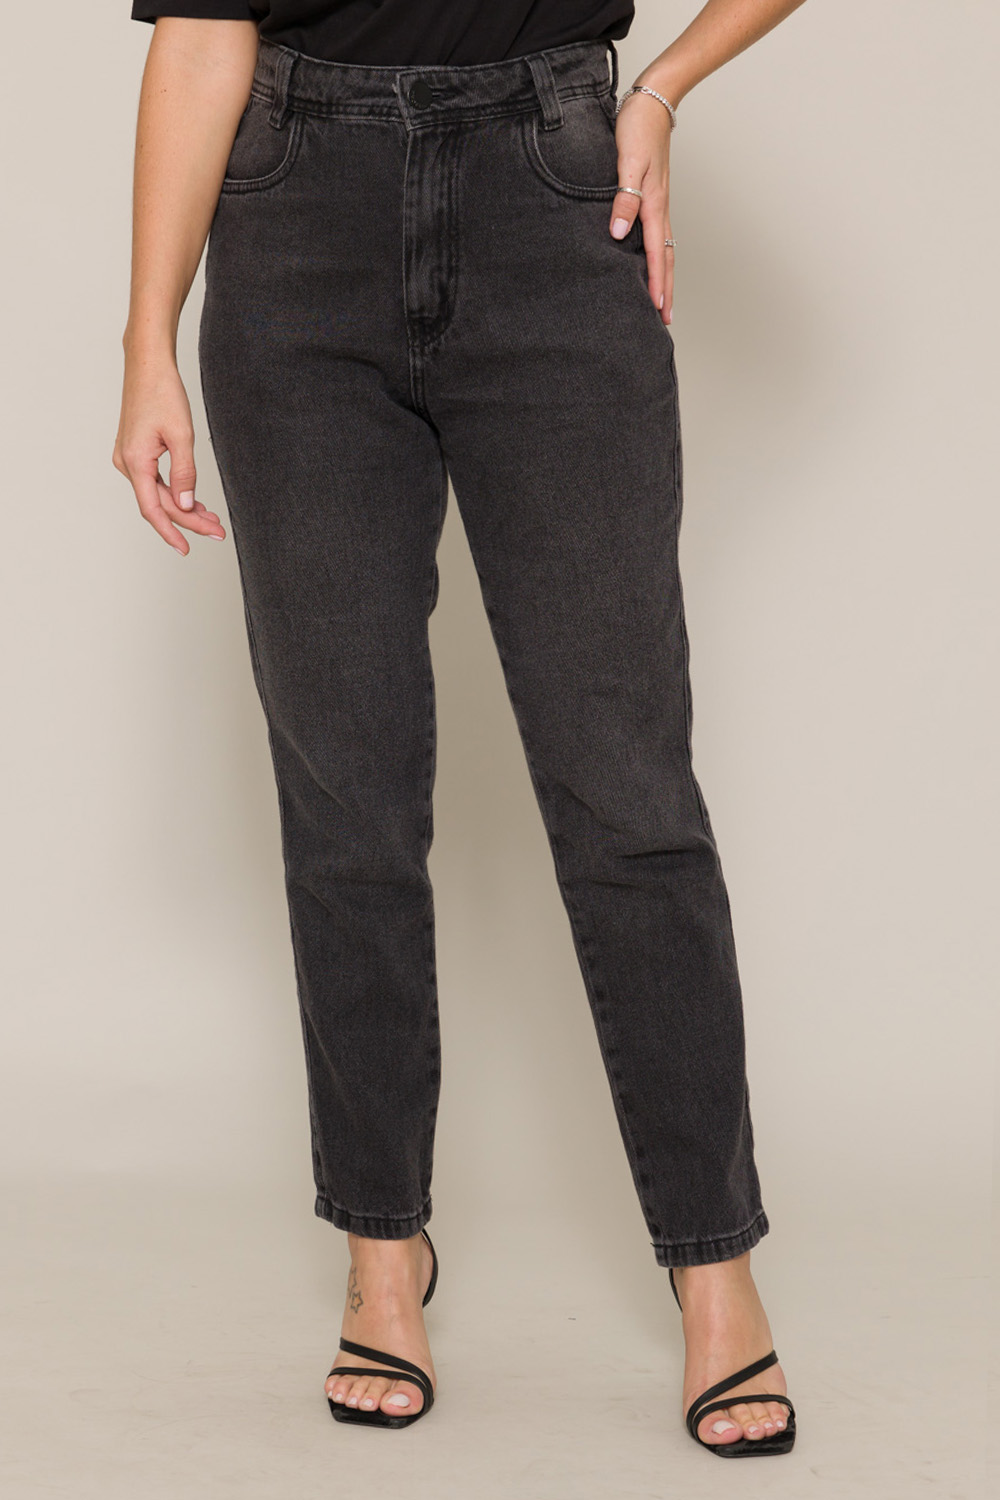 Calça Jeans Mom Cropped Basic 11574 - Preto Estonado